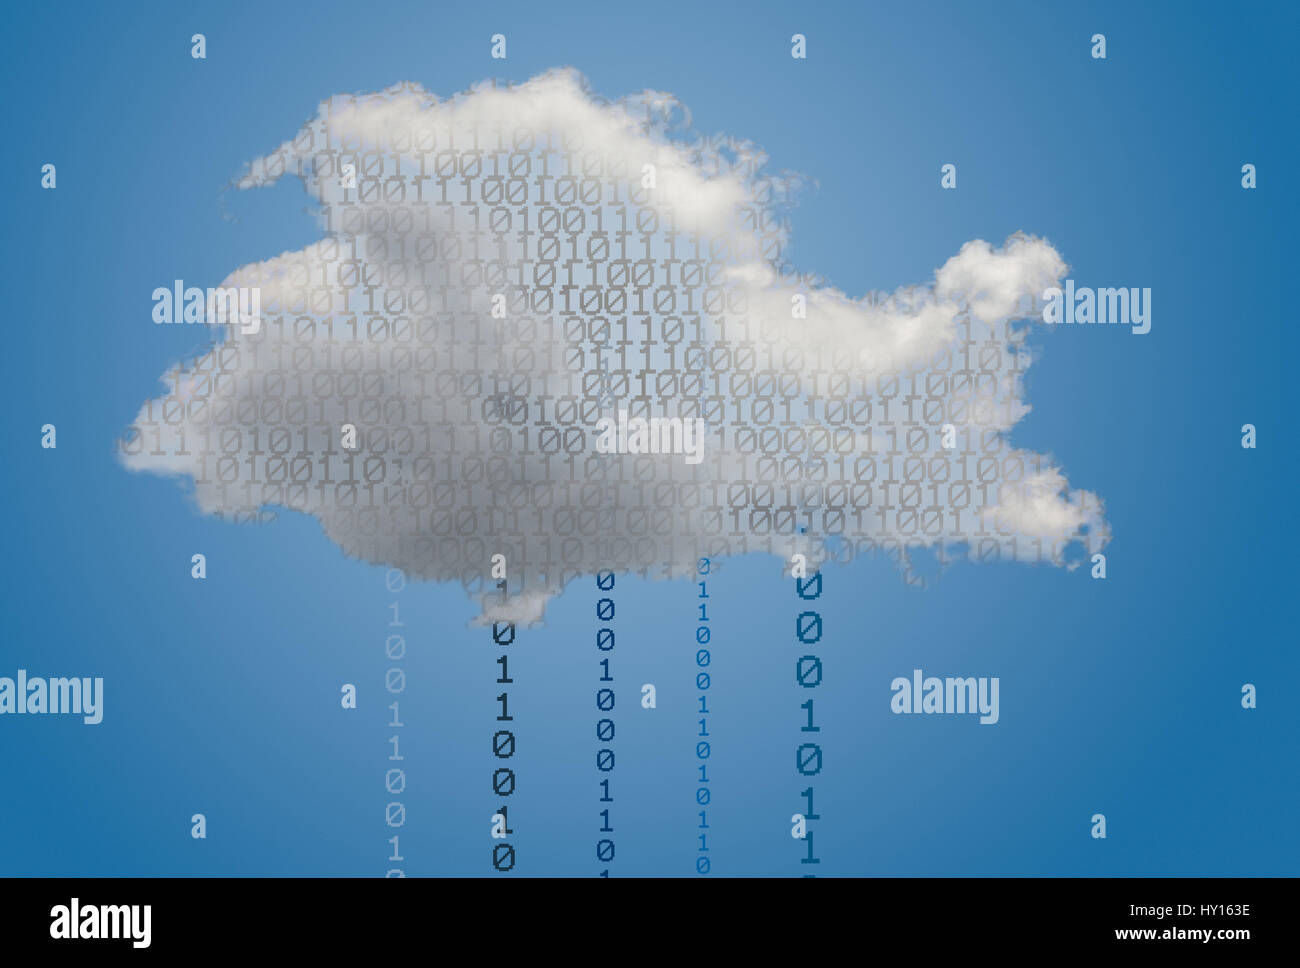 Imagen concepto de cloud computing y la seguridad en la nube para las aplicaciones en línea mostrando bits digitales dentro de la plataforma de servicios web. Foto de stock